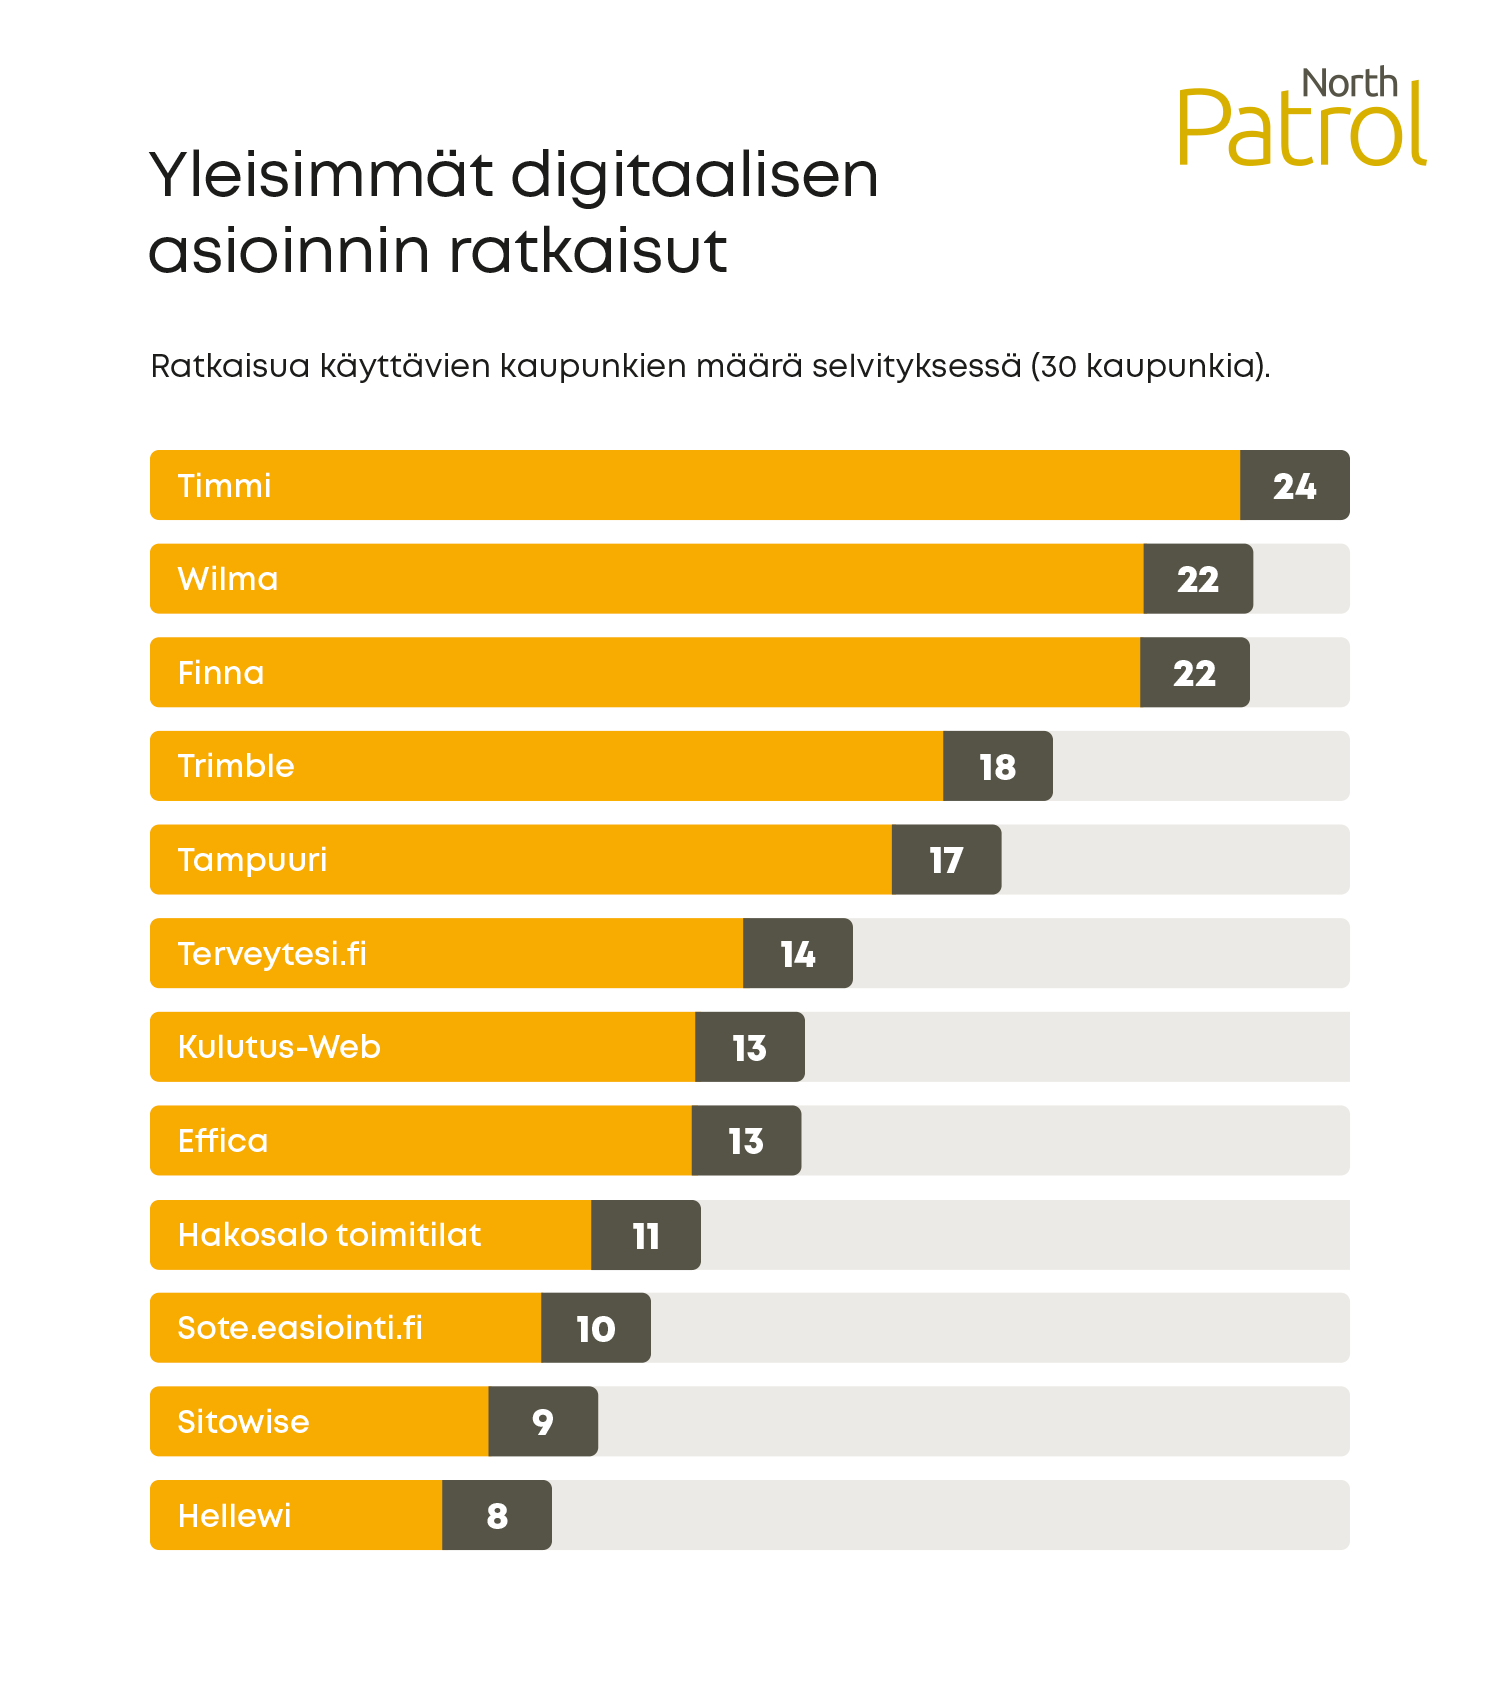 Yleisimmät digitaalisen asioinnin valmisratkaisut Suomen kunnissa